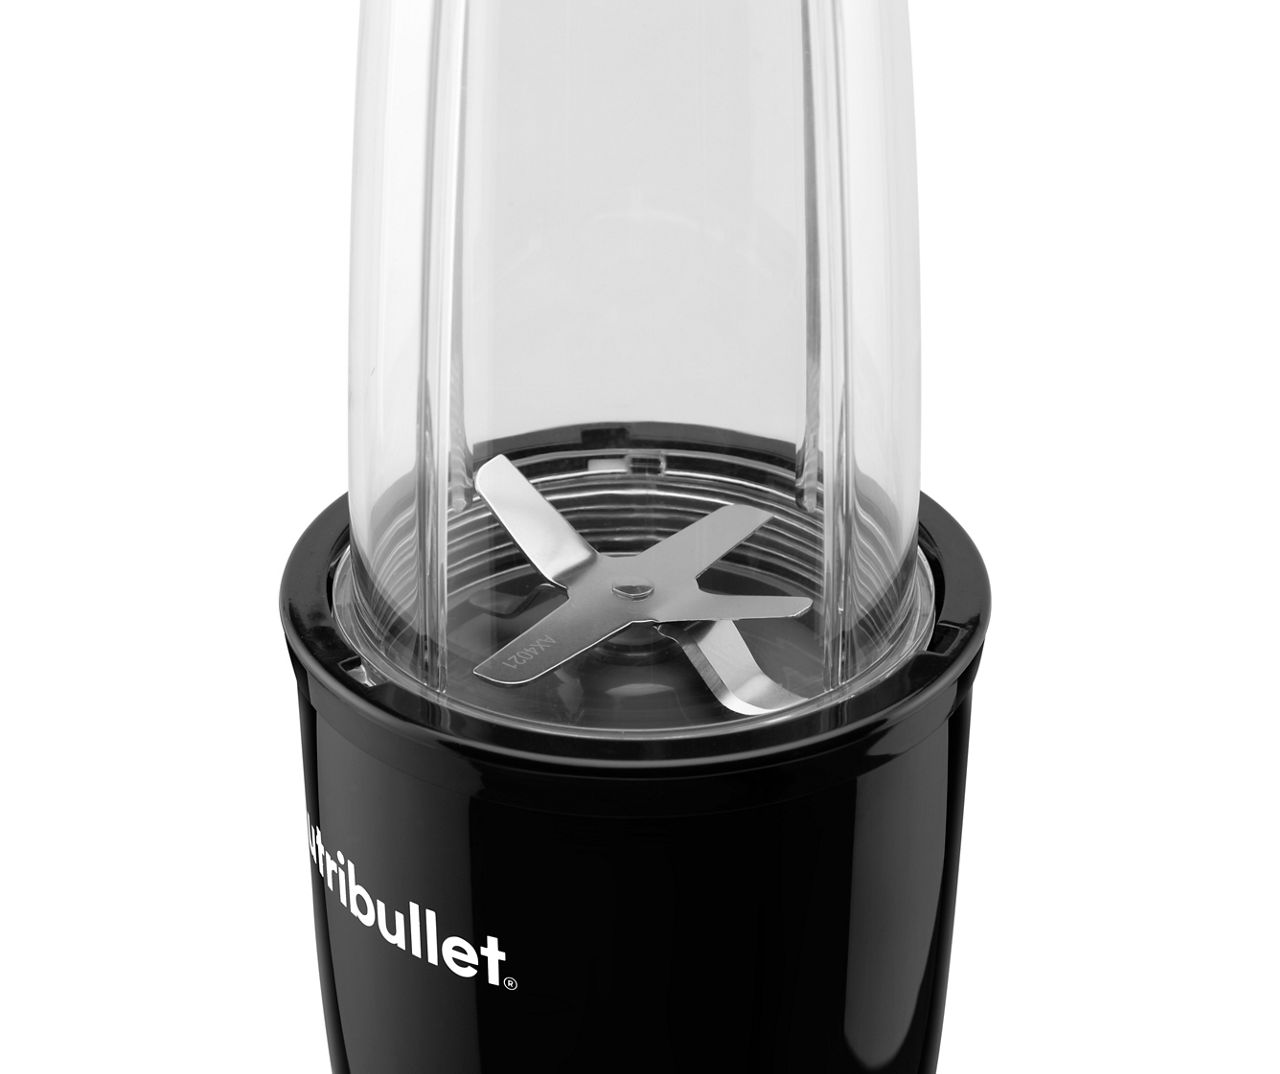 Nutribullet Pro Single Serve Blender, White